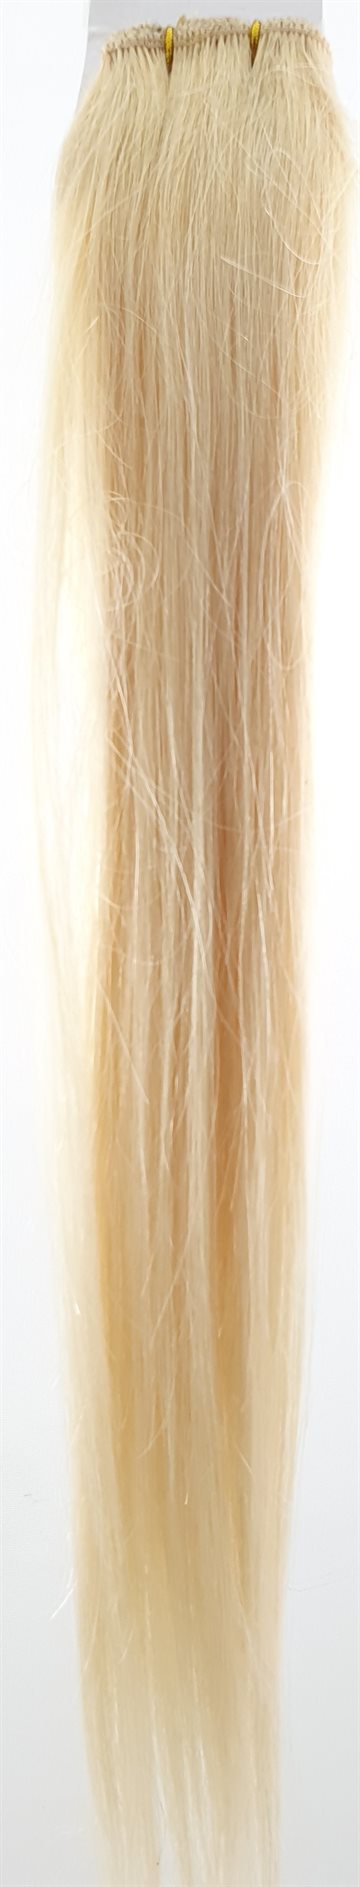 Human Hair - Straight Weft hair, color 613 - 18" (46 cm længden.)